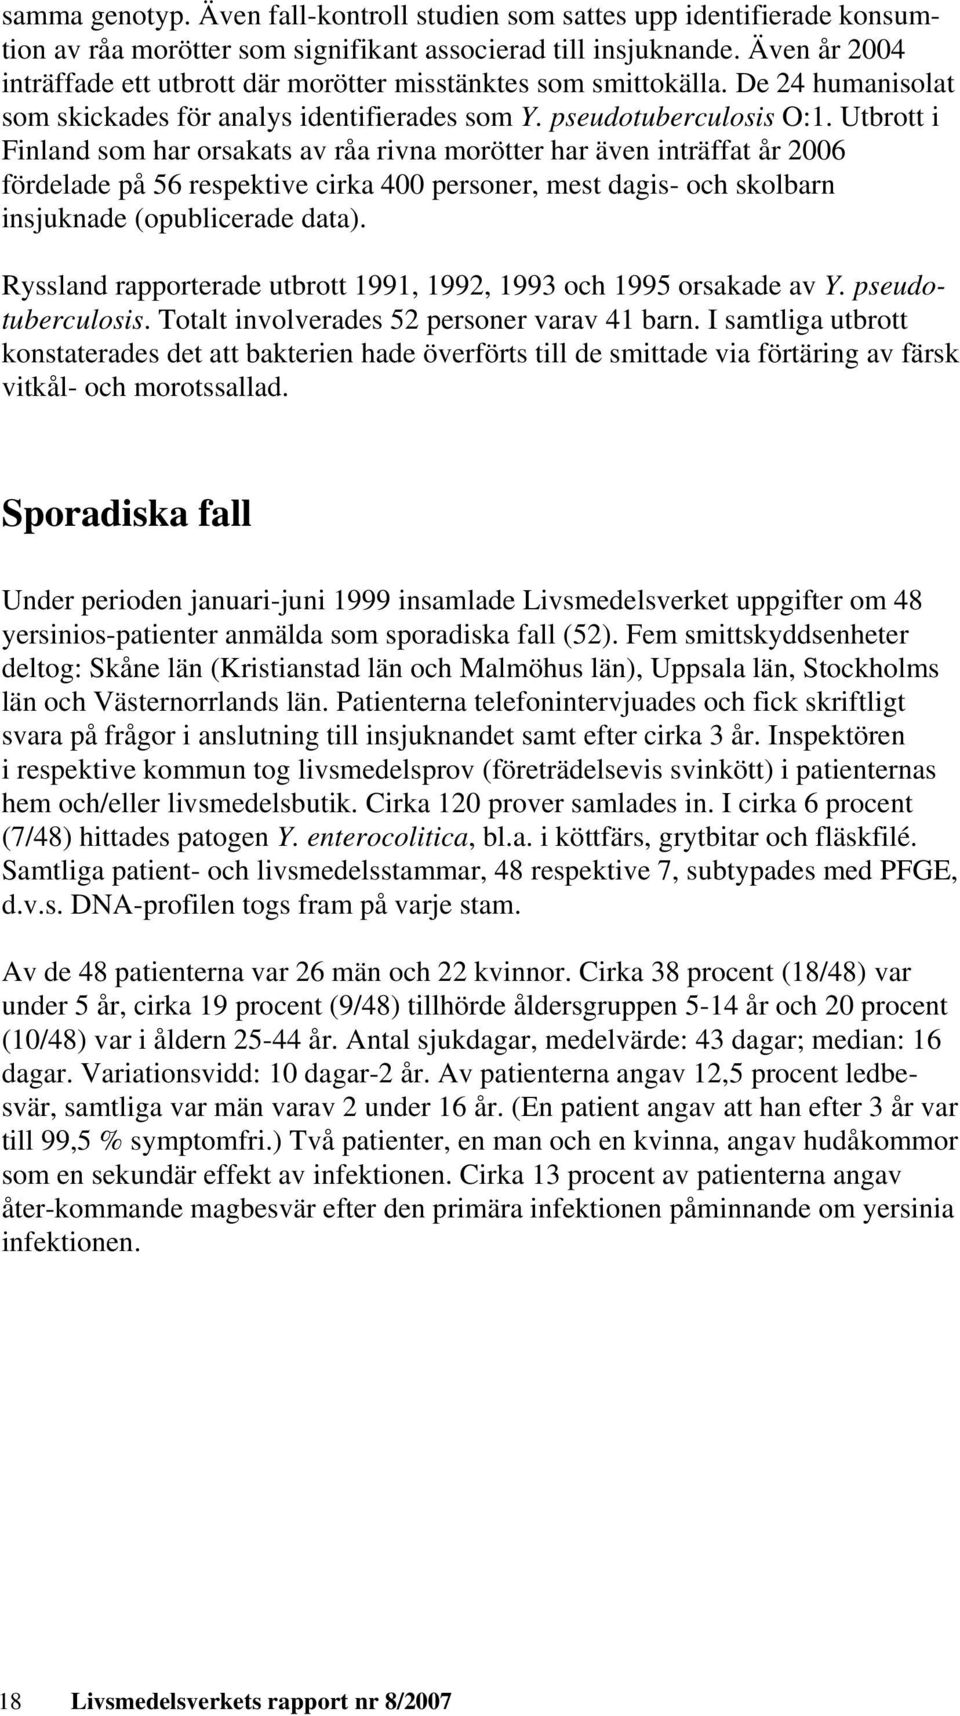 Utbrott i Finland som har orsakats av råa rivna morötter har även inträffat år 2006 fördelade på 56 respektive cirka 400 personer, mest dagis- och skolbarn insjuknade (opublicerade data).